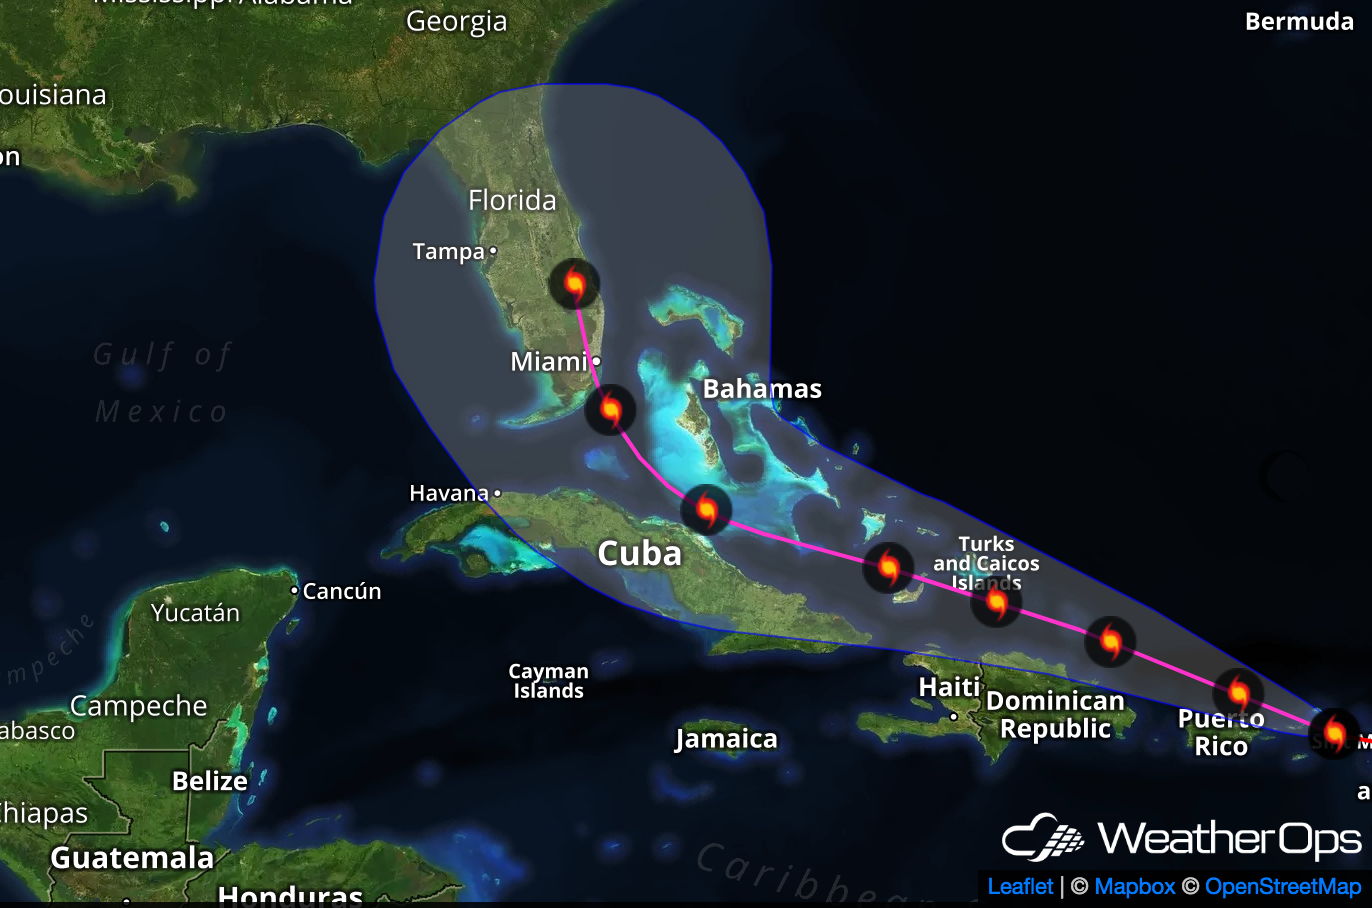 Understanding the Hurricane Cone of Uncertainty